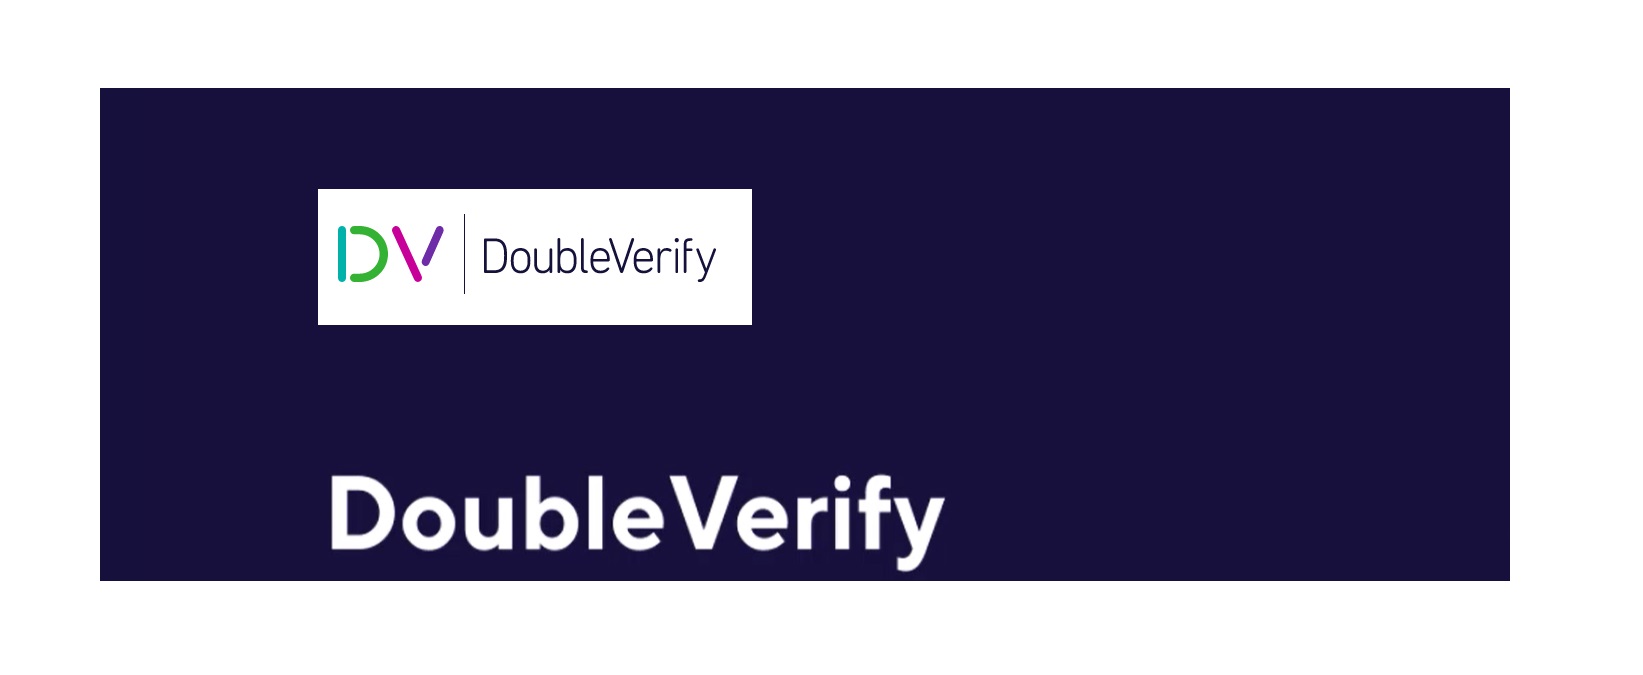 double verify, programapublicidad